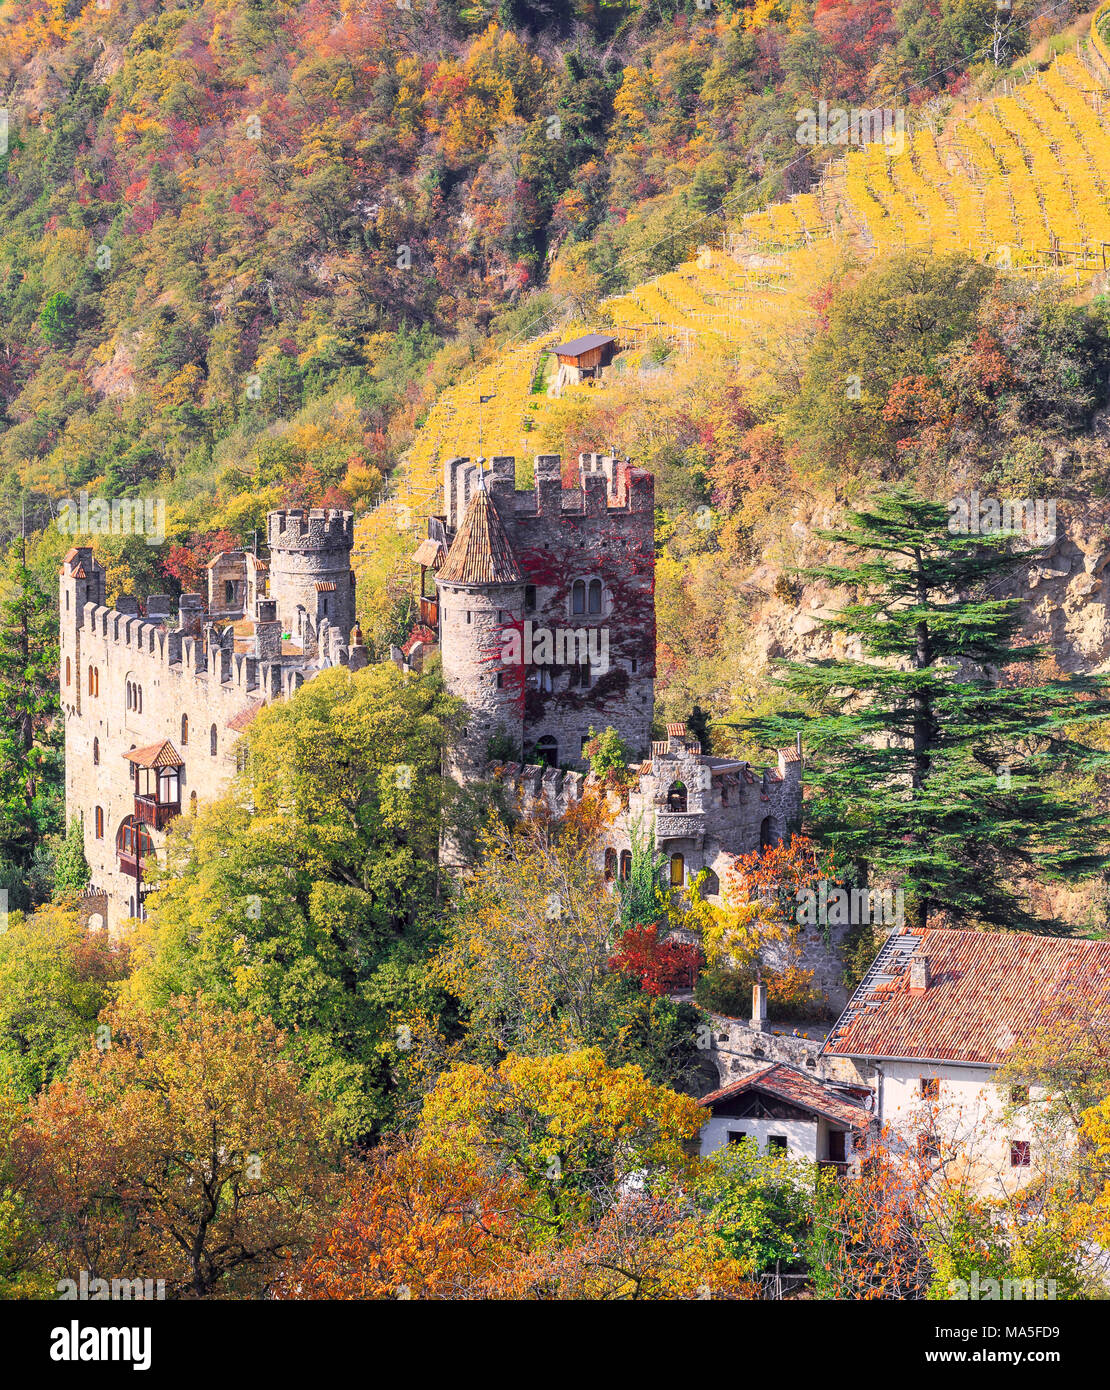 Fontana castillo rodeado por los colores del otoño. Merano, Sudtirol, Italia. Foto de stock